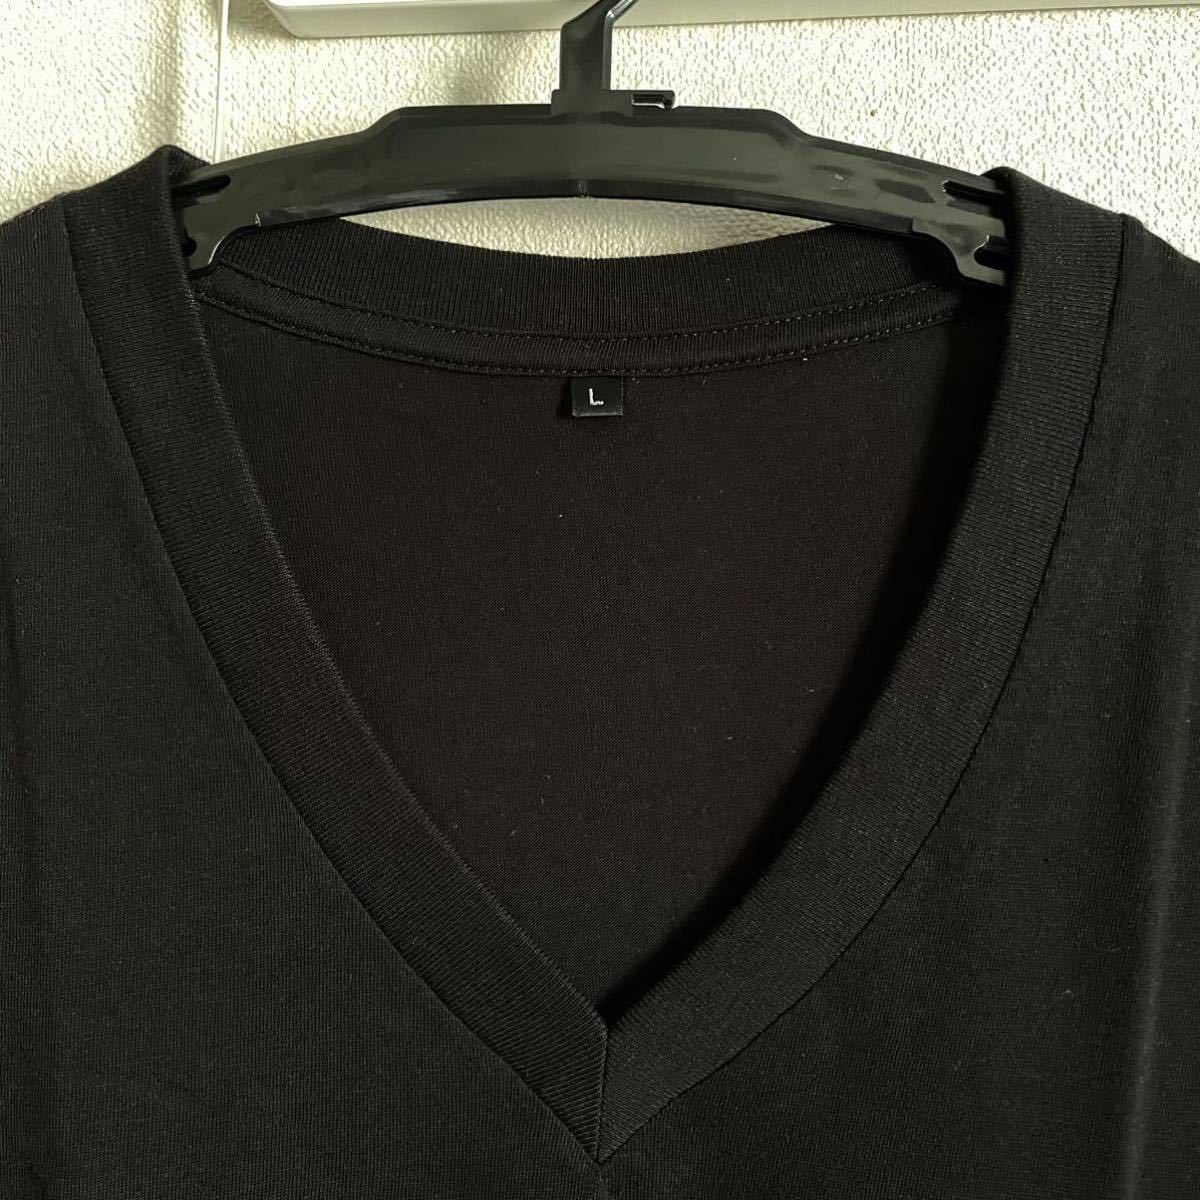 10枚組 L VネックTシャツ 綿100% 黒 ブラック V首 半袖 Tシャツ アンダーシャツ 男性 紳士 下着 メンズ インナー シャツ 半袖シャツ 定番♪